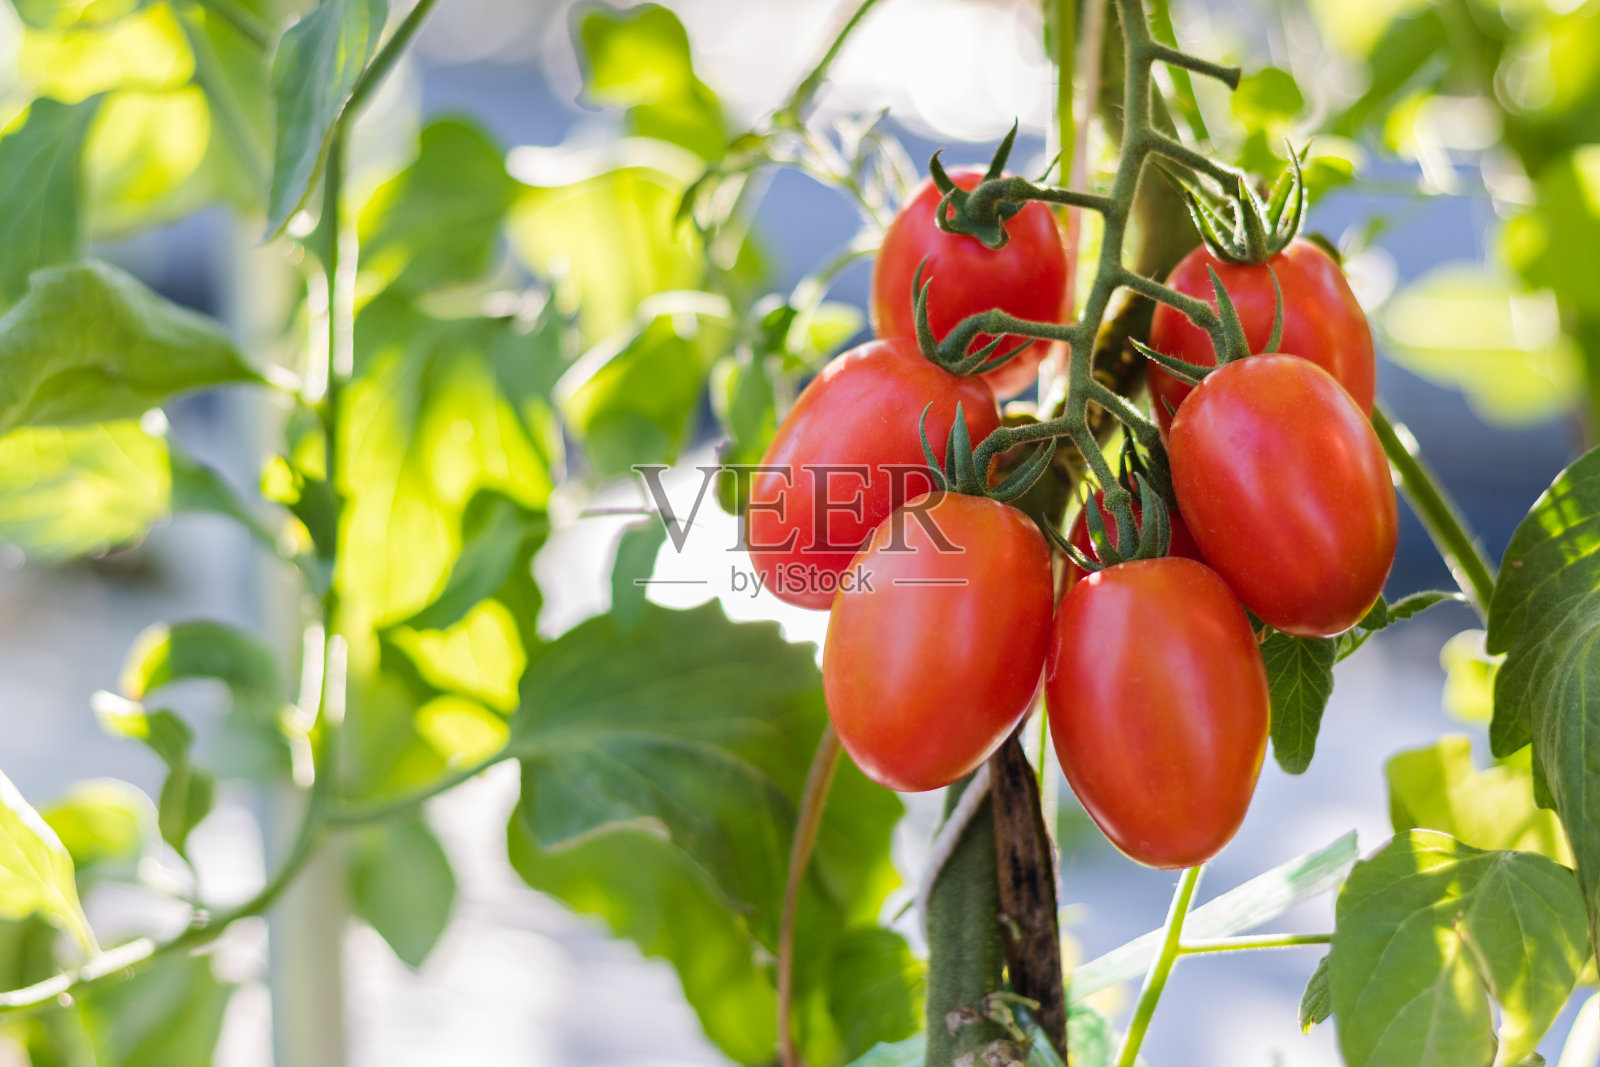 近距离观察红樱桃番茄在田间的生长情况。照片摄影图片